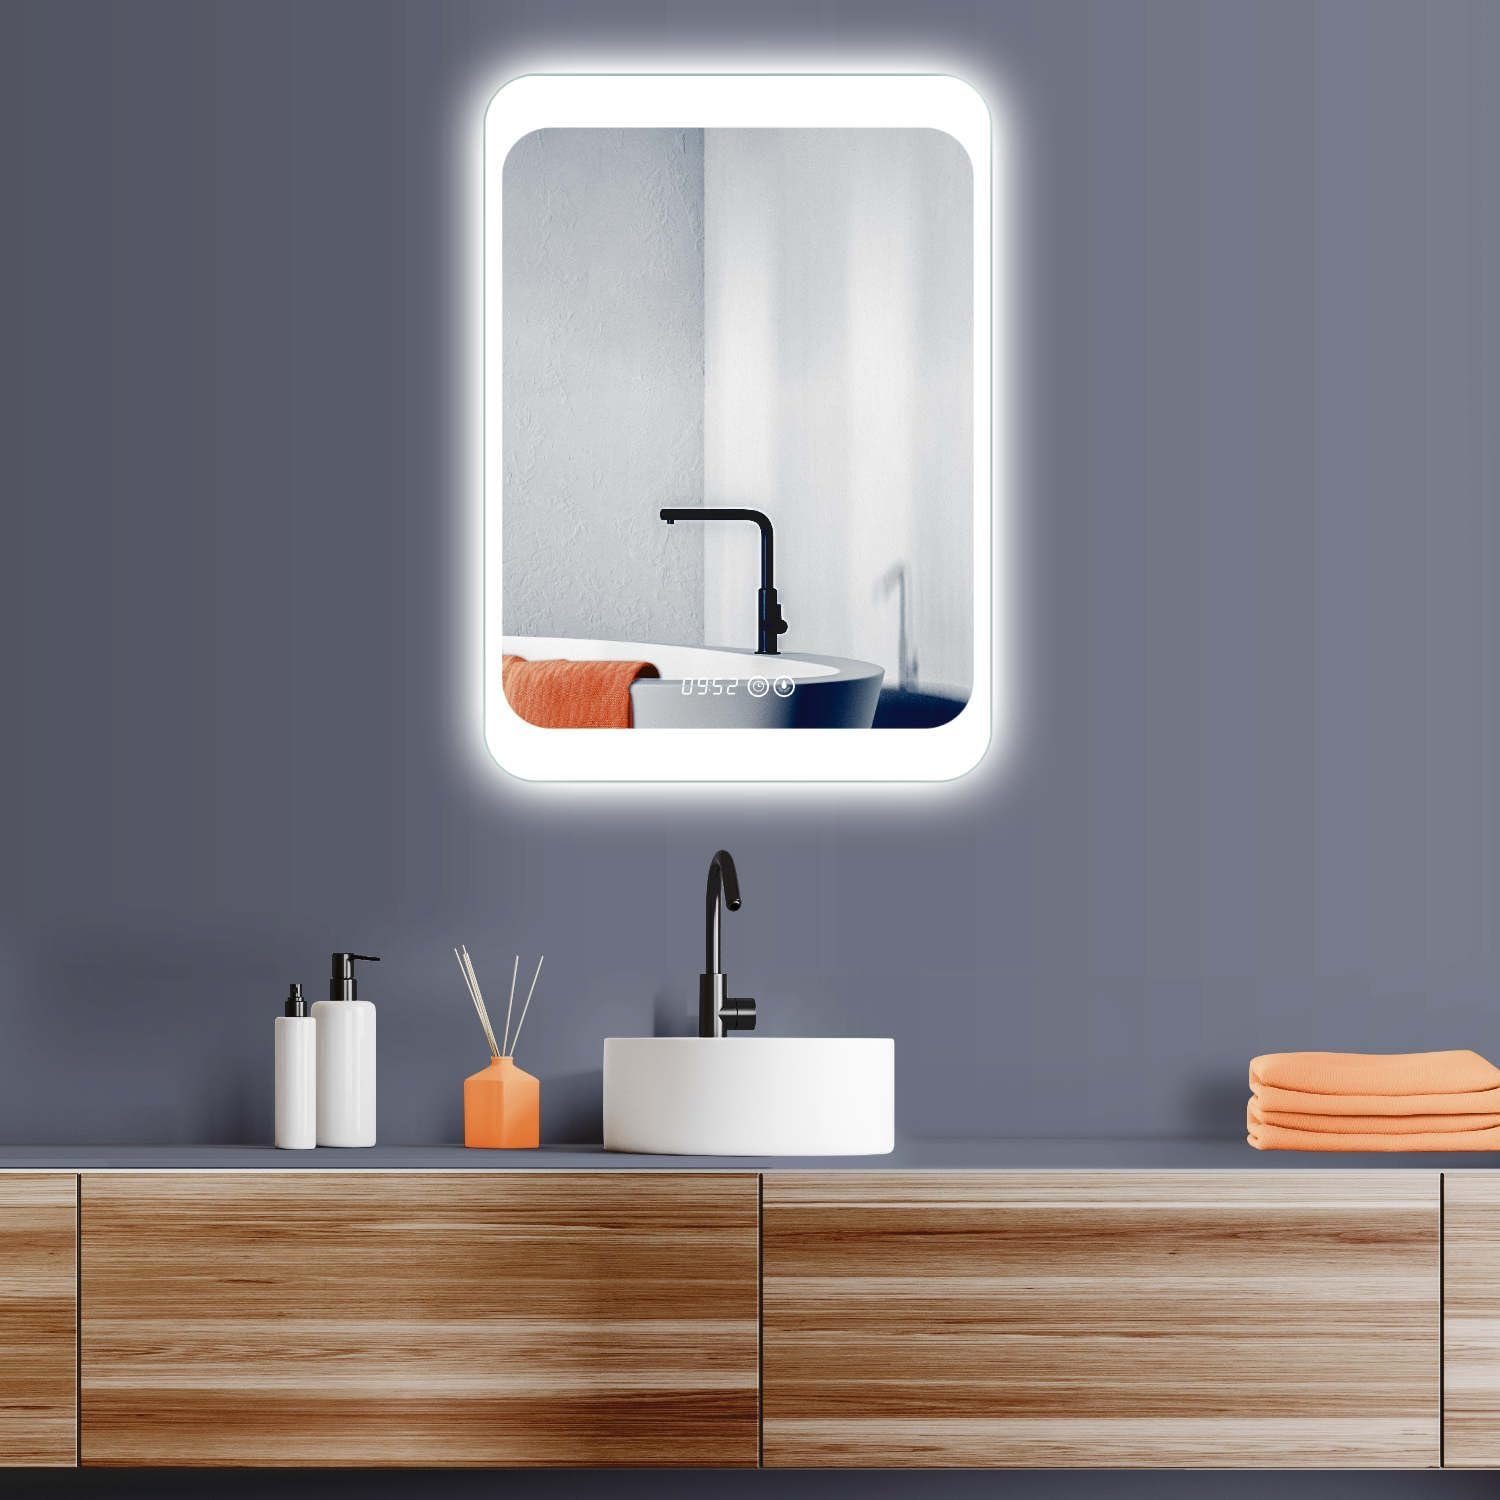 HOKO Badspiegel LED Design Wandspiegel 50x70/60x80cm+Digital Uhr+LED Wechsel (Warmweiß - Kaltweiß - Neutral. Licht mit Touch Schalter und mit Wandschalter einschaltbar. Memory-Funktion.IP44, 5mm HD Glass)